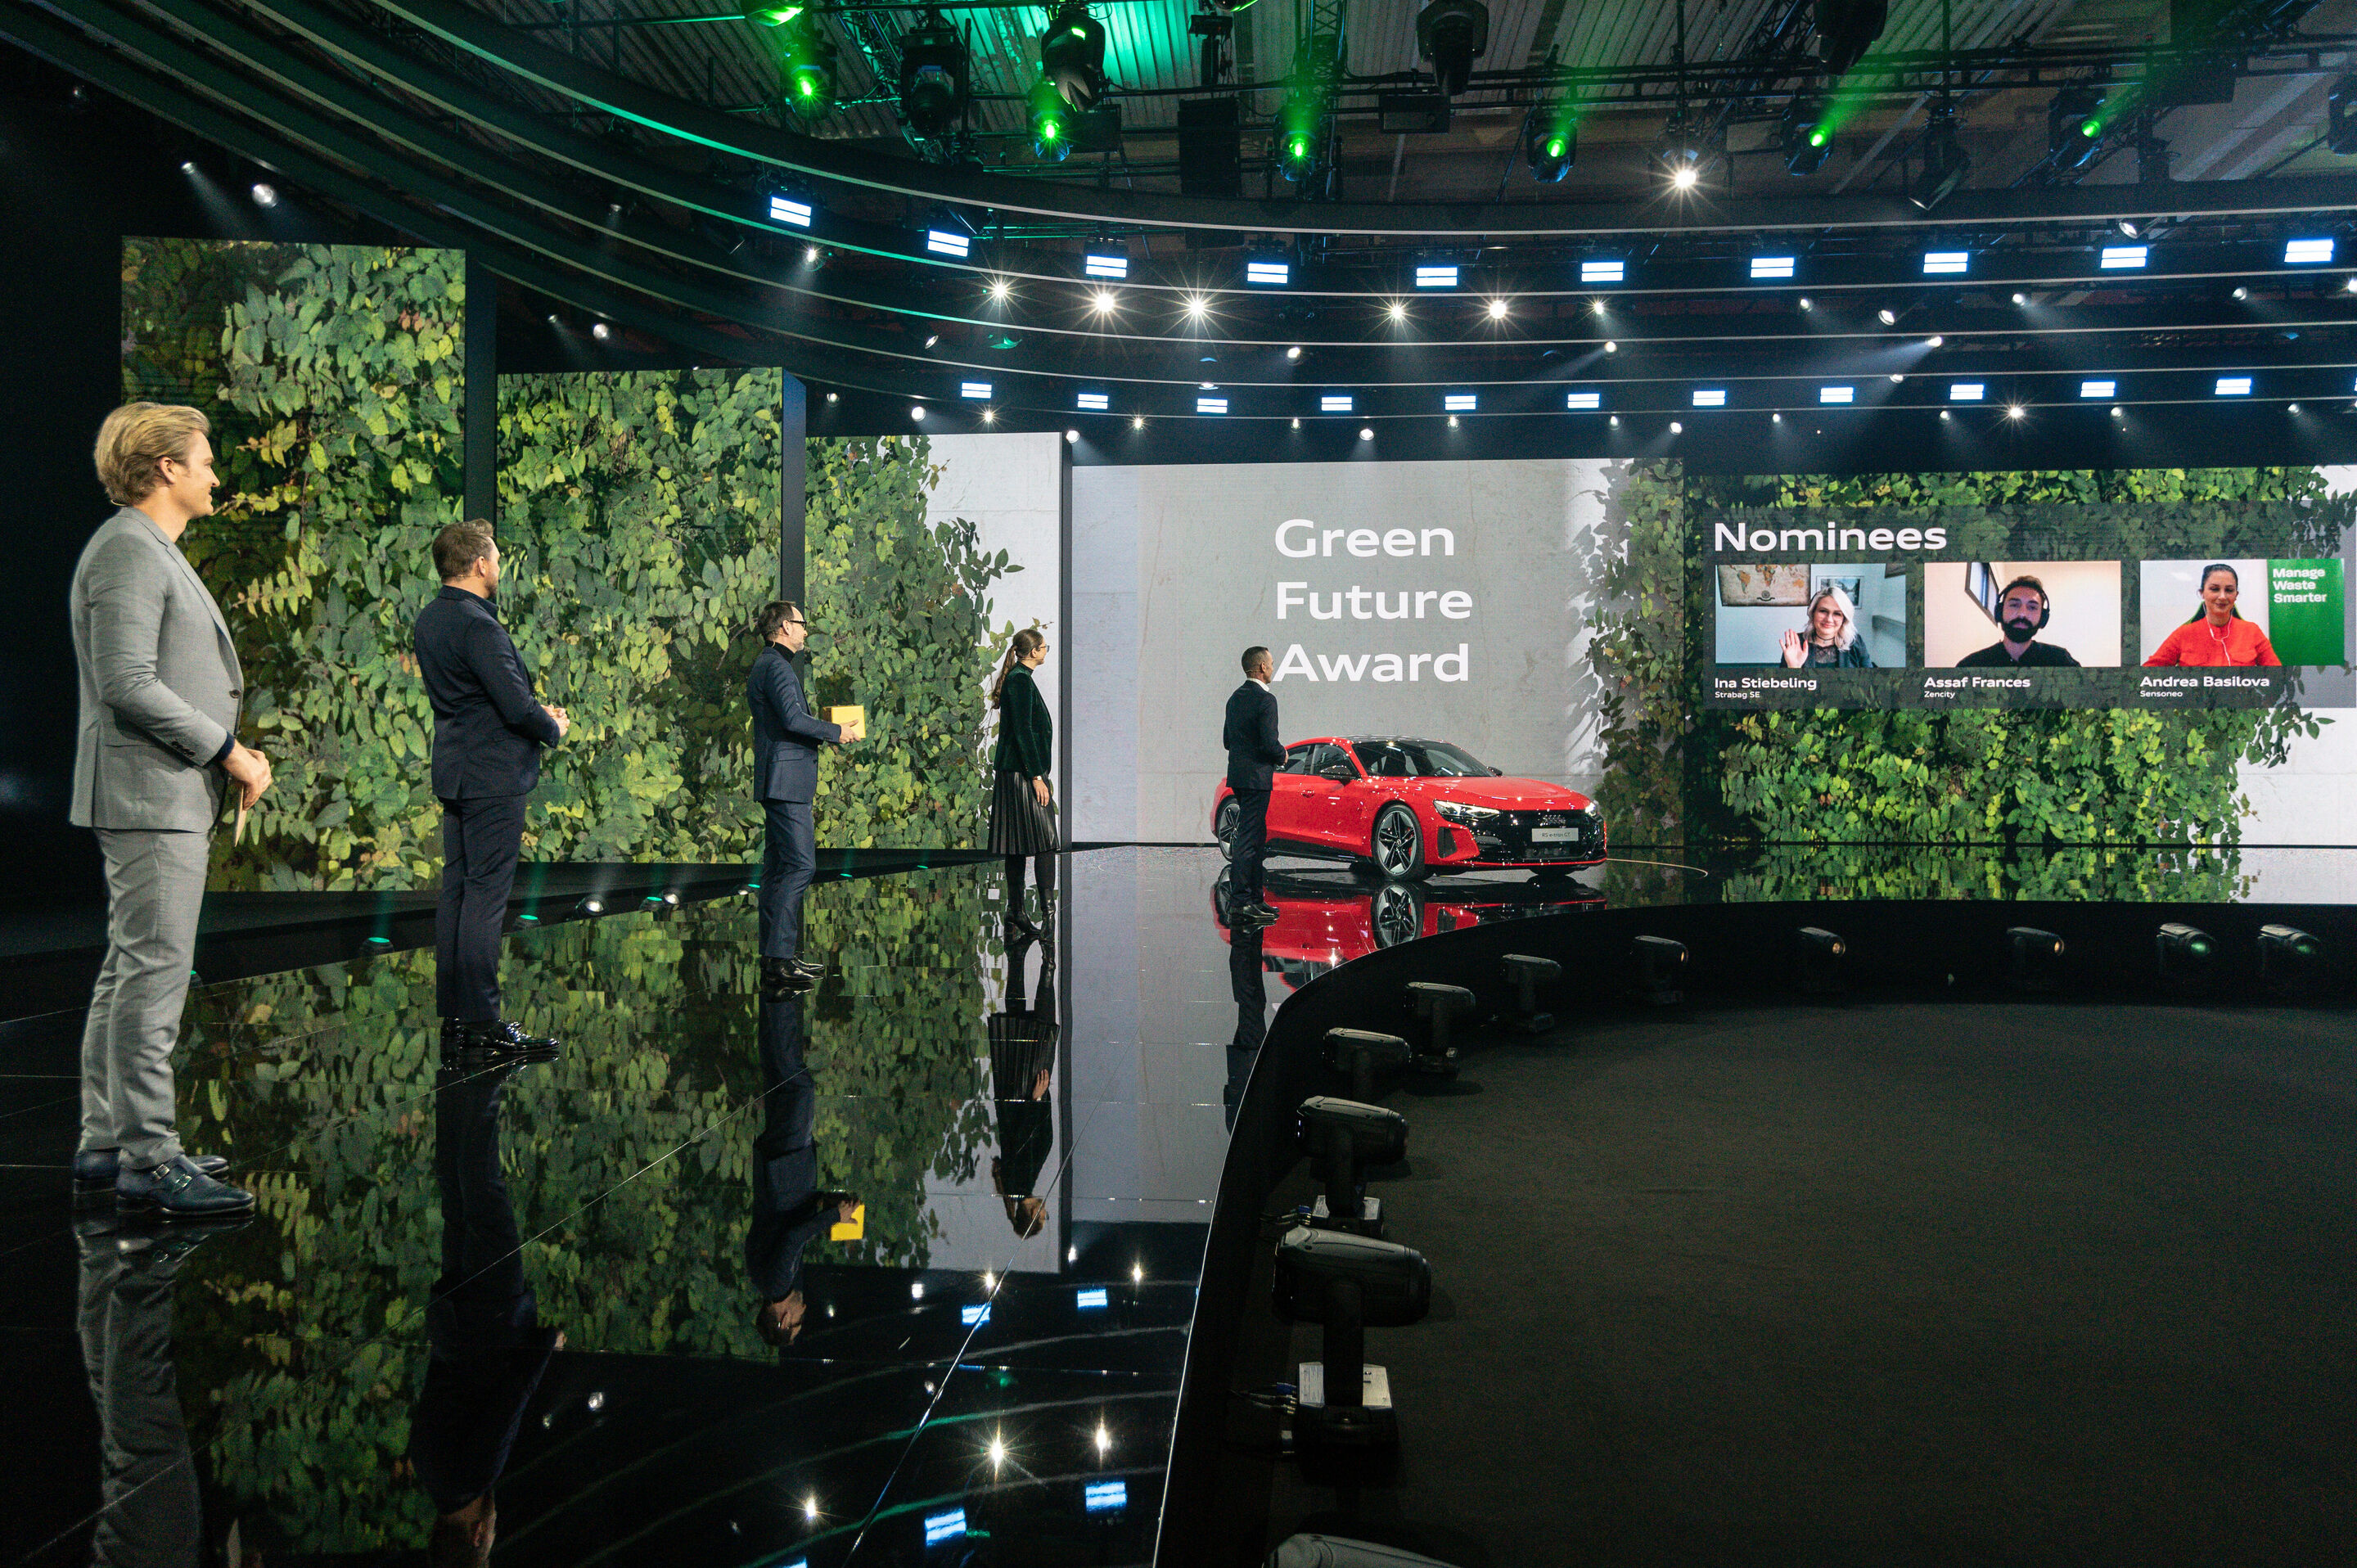 Künstliche Intelligenz für mehr Nachhaltigkeit und Lebensqualität in Städten: GREENTECH FESTIVAL und Audi verleihen GREEN FUTURE Award an Zencity